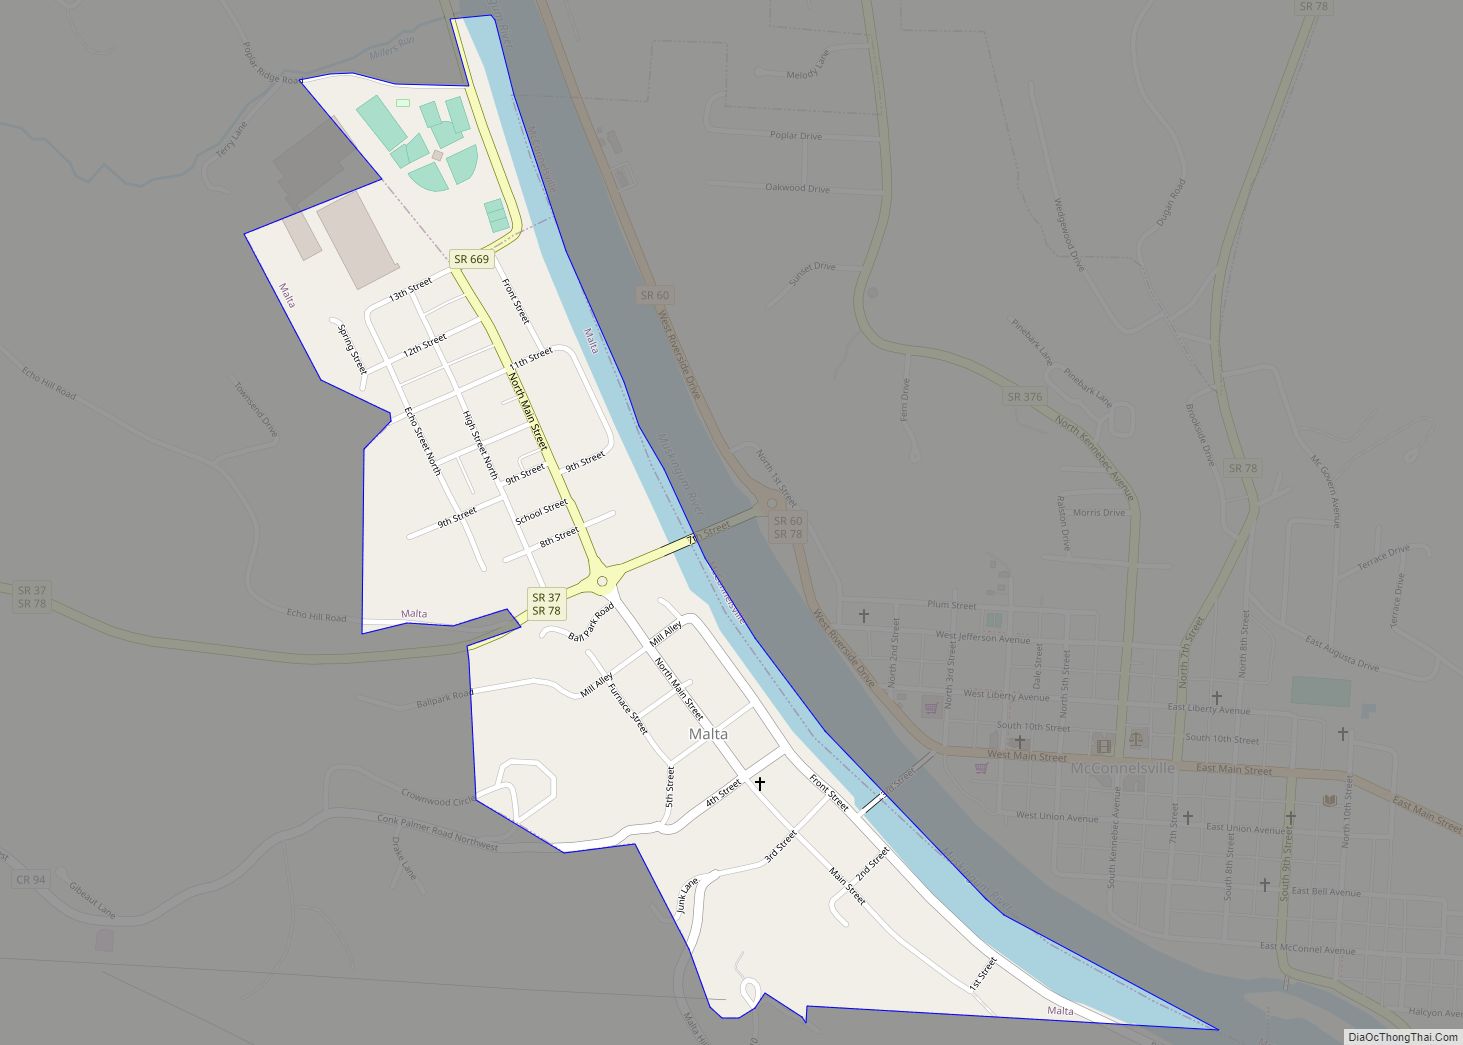 Map of Malta village, Ohio